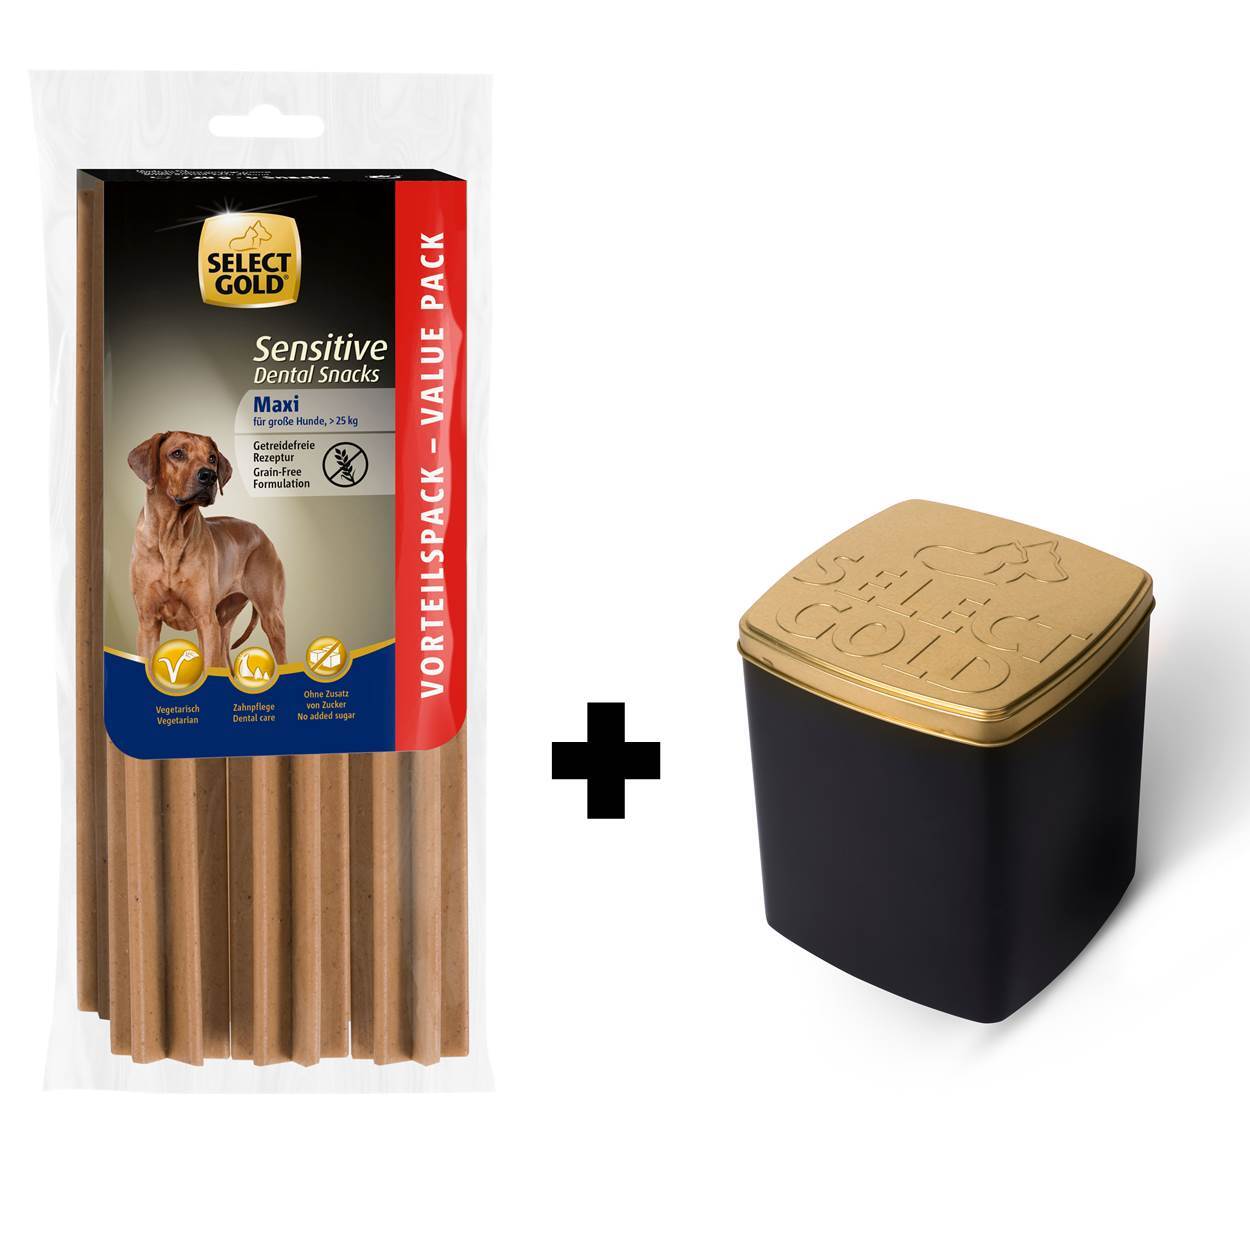 SELECT GOLD Sensitive Dental Snacks + Schmuckdose für große Hunde 720g Vorteilspack